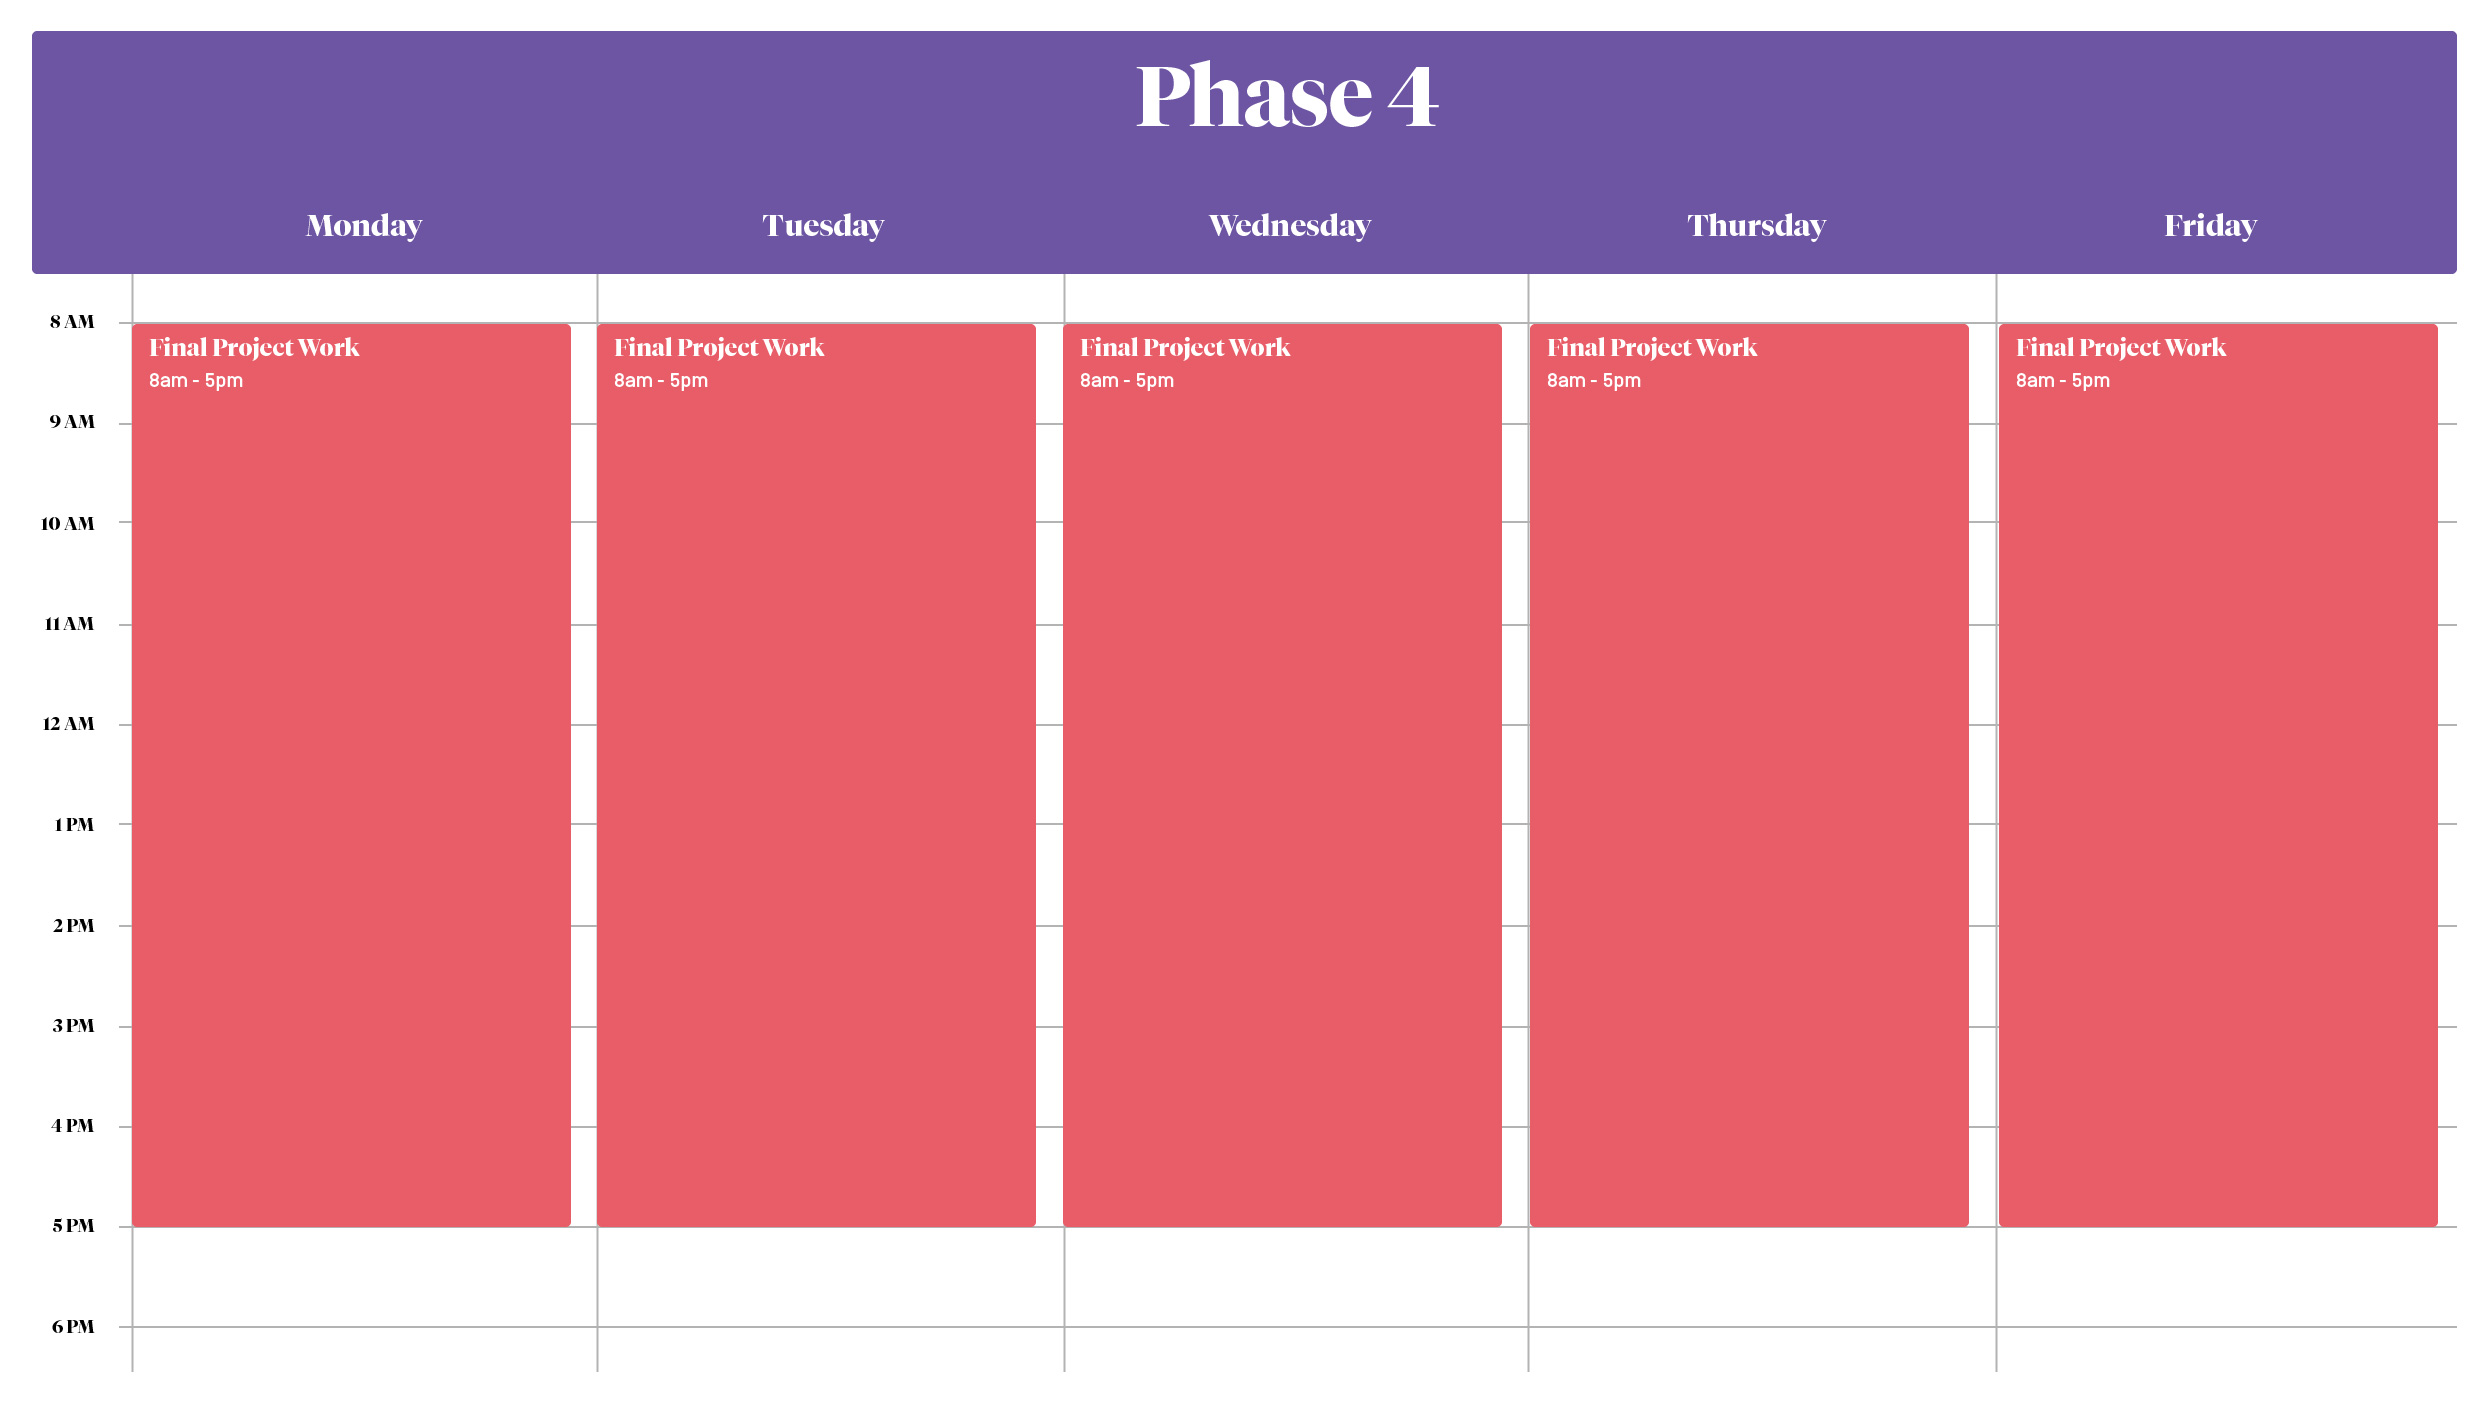 Phase 4 Schedule